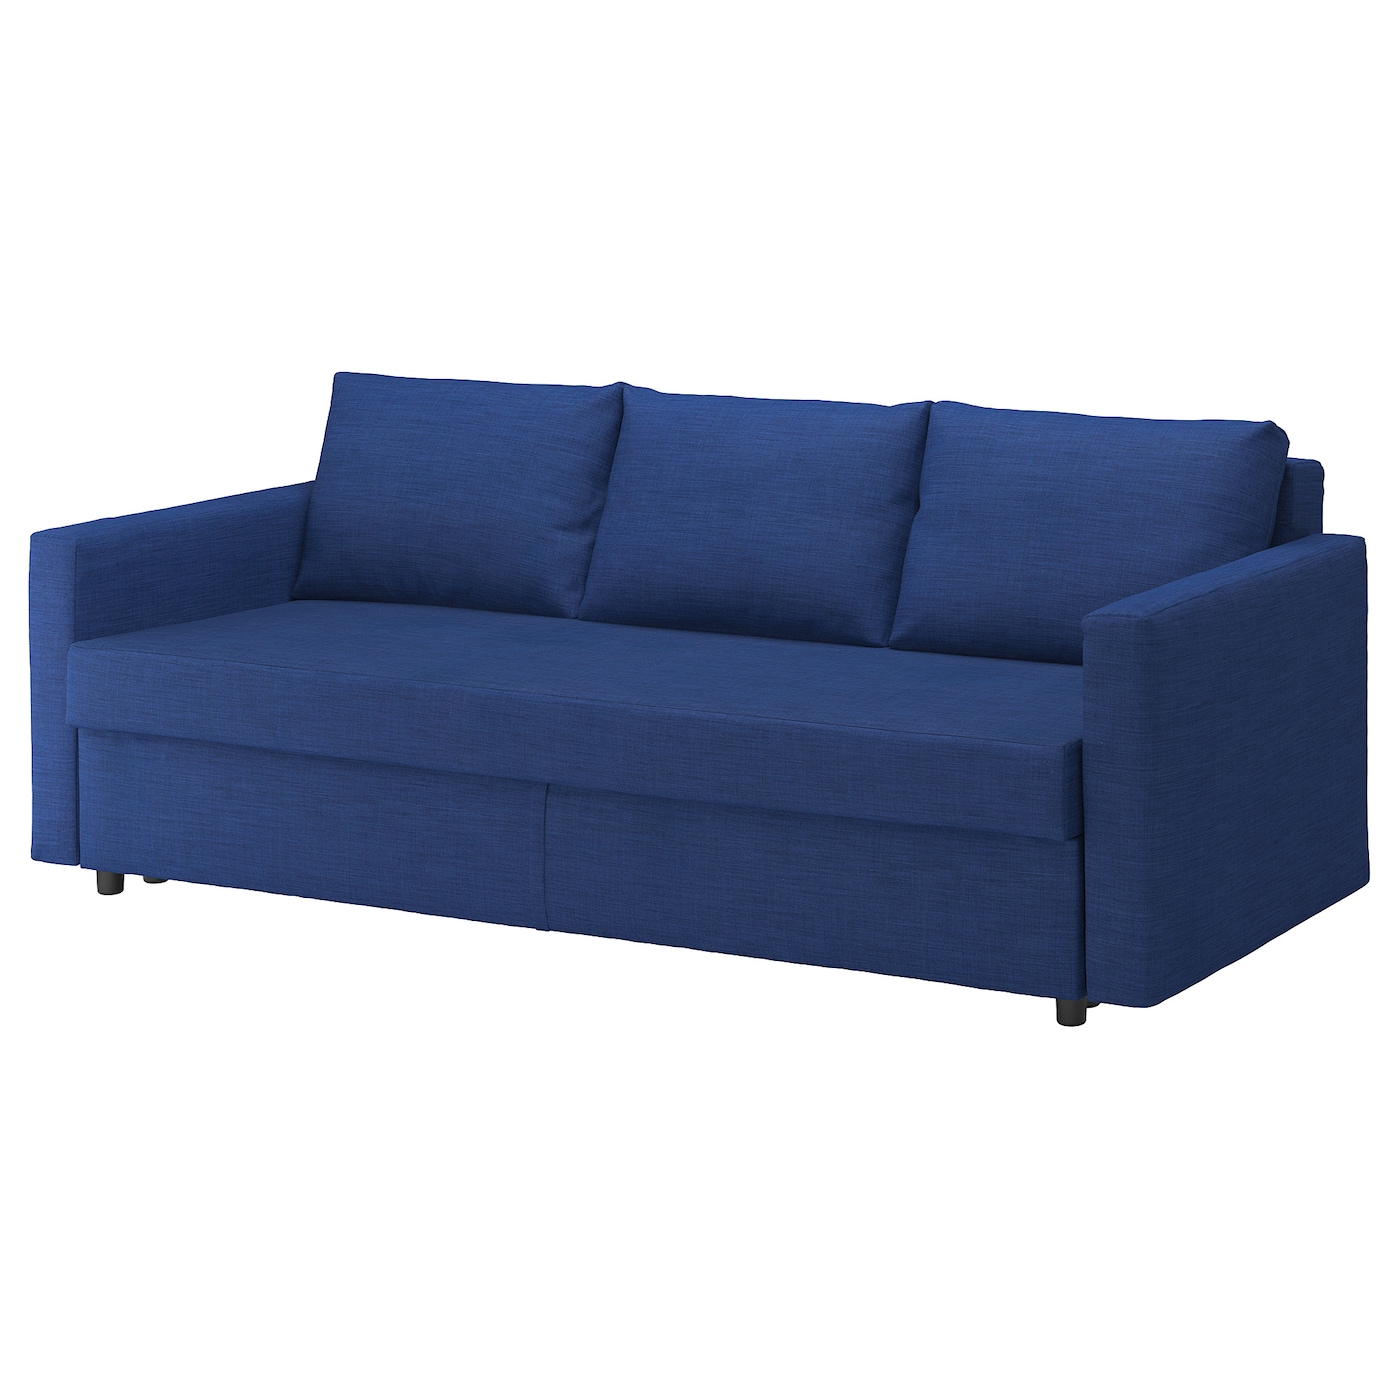 ФРИХЕТЕН 3 дивана-кровати с откидной спинкой, Скифтебо синий FRIHETEN IKEA